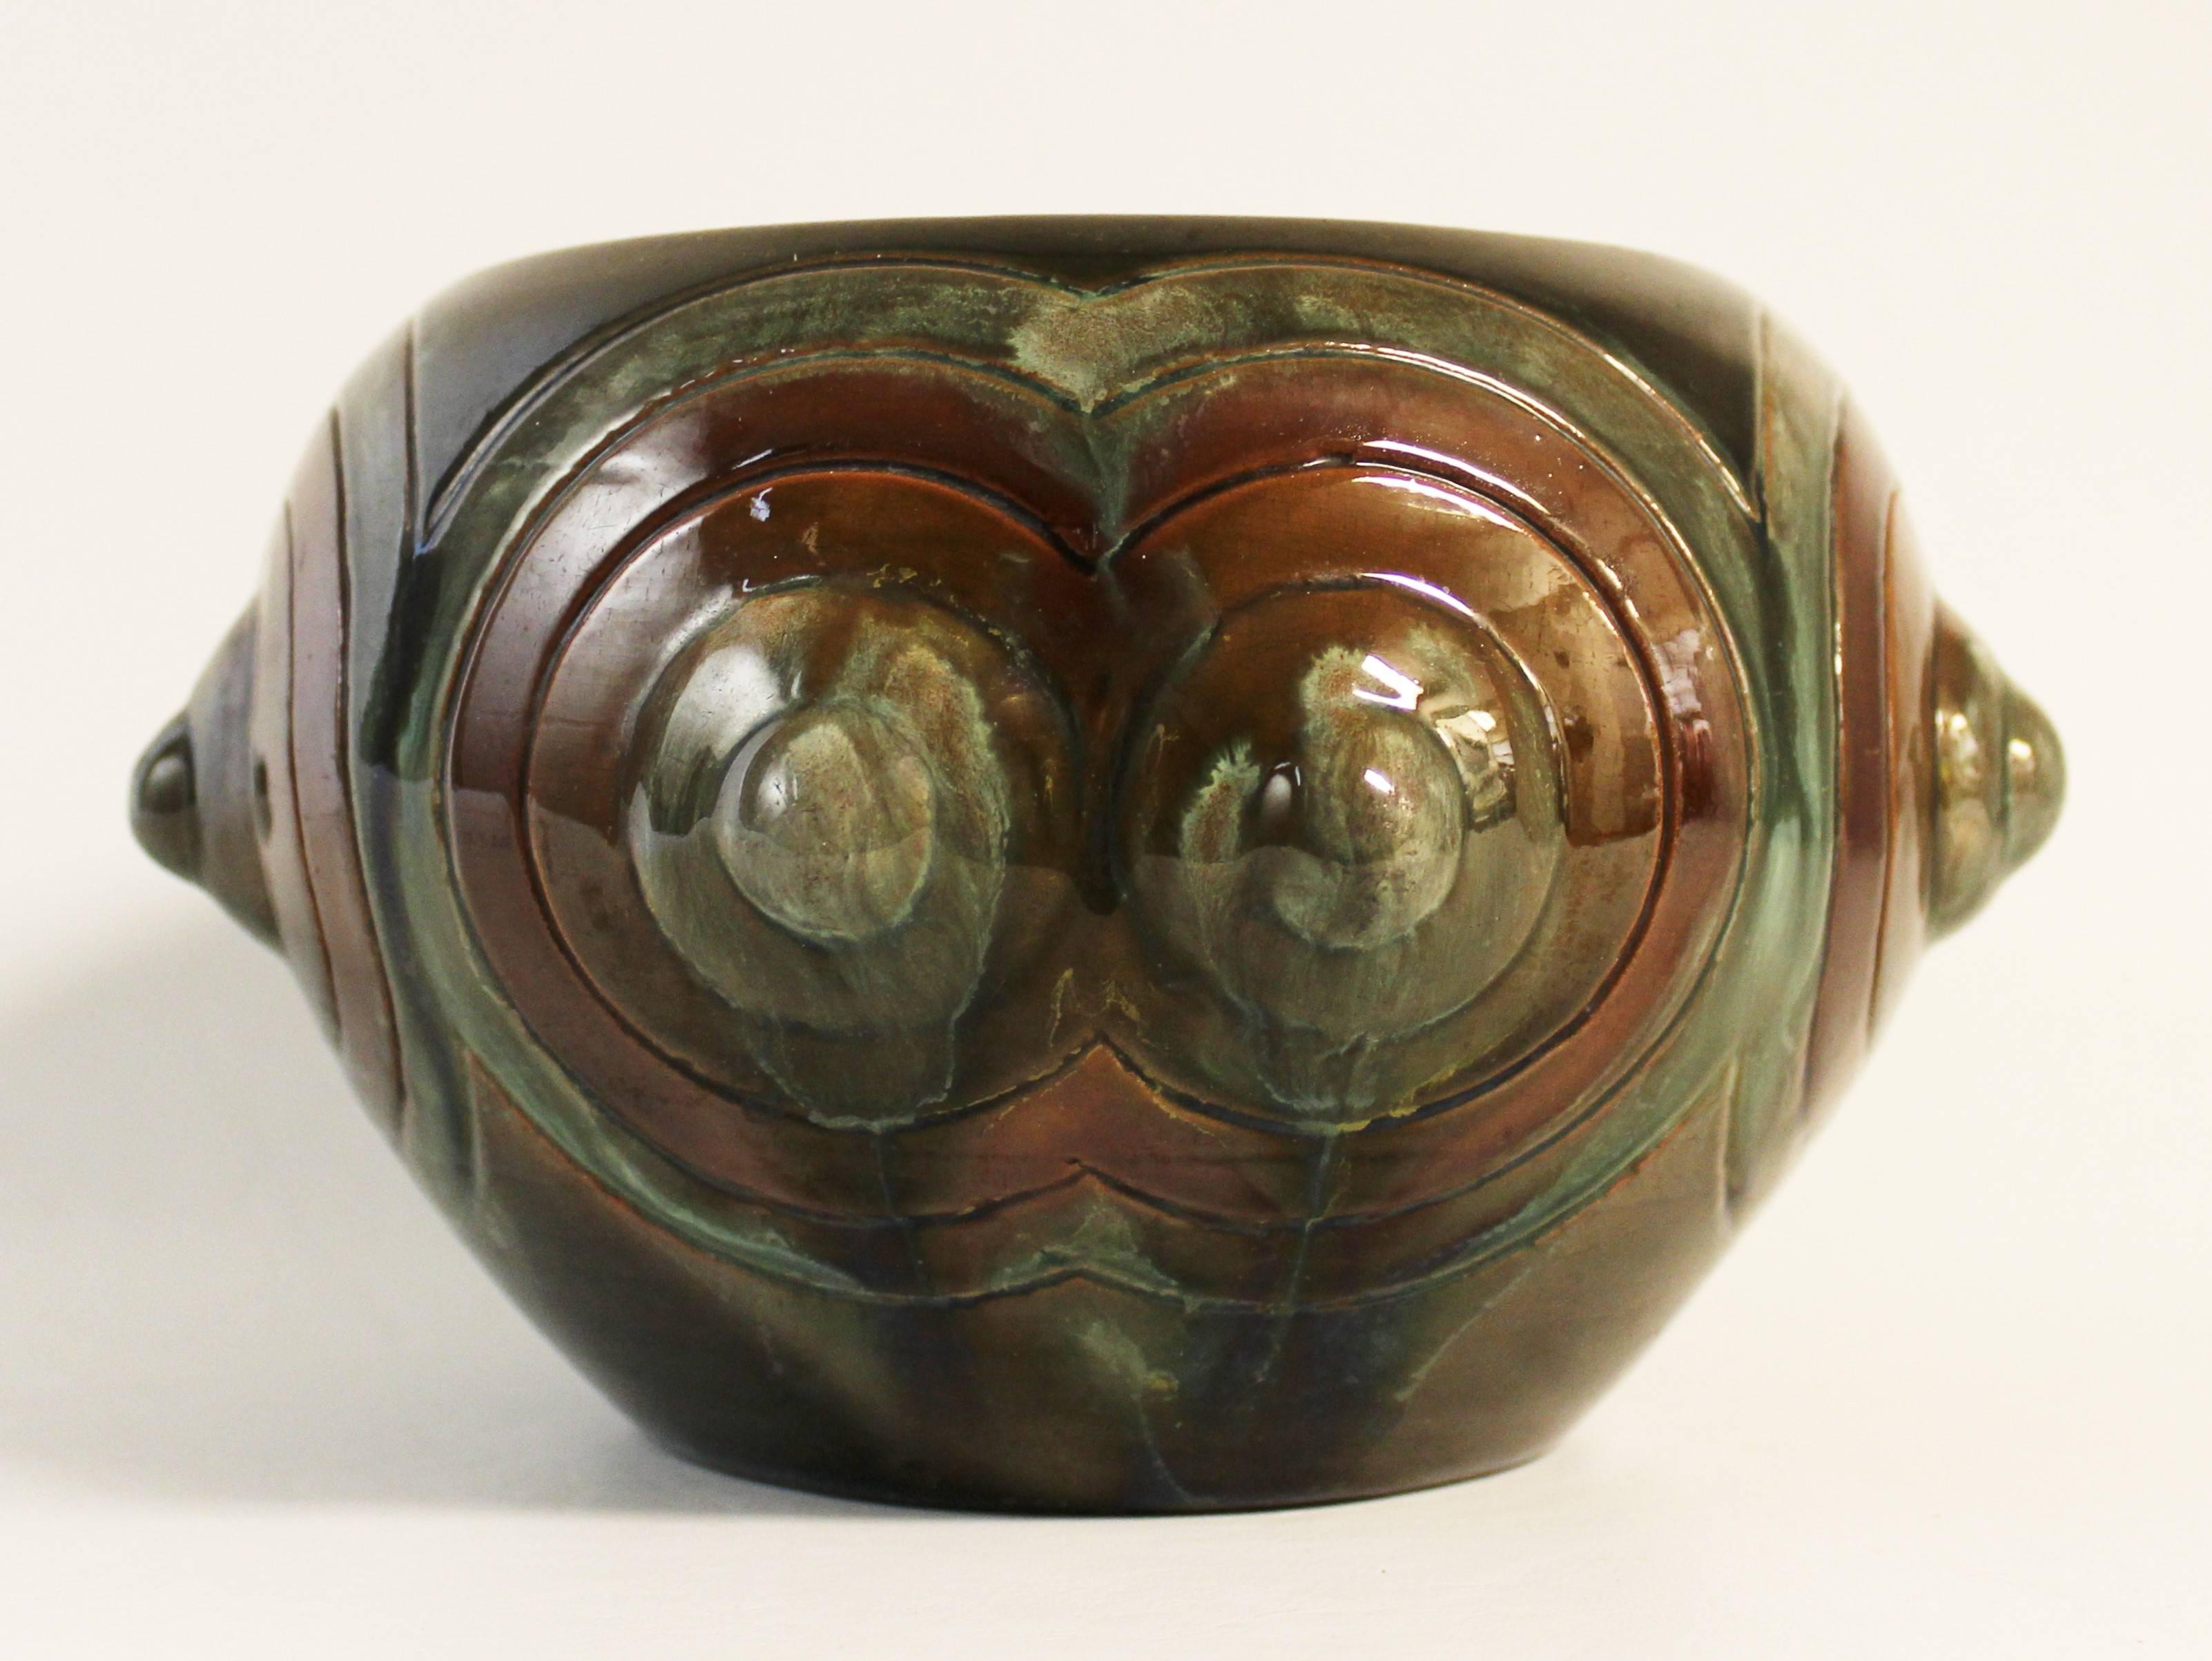 Christopher Dresser for linthorpe art pottery vase/bowl.